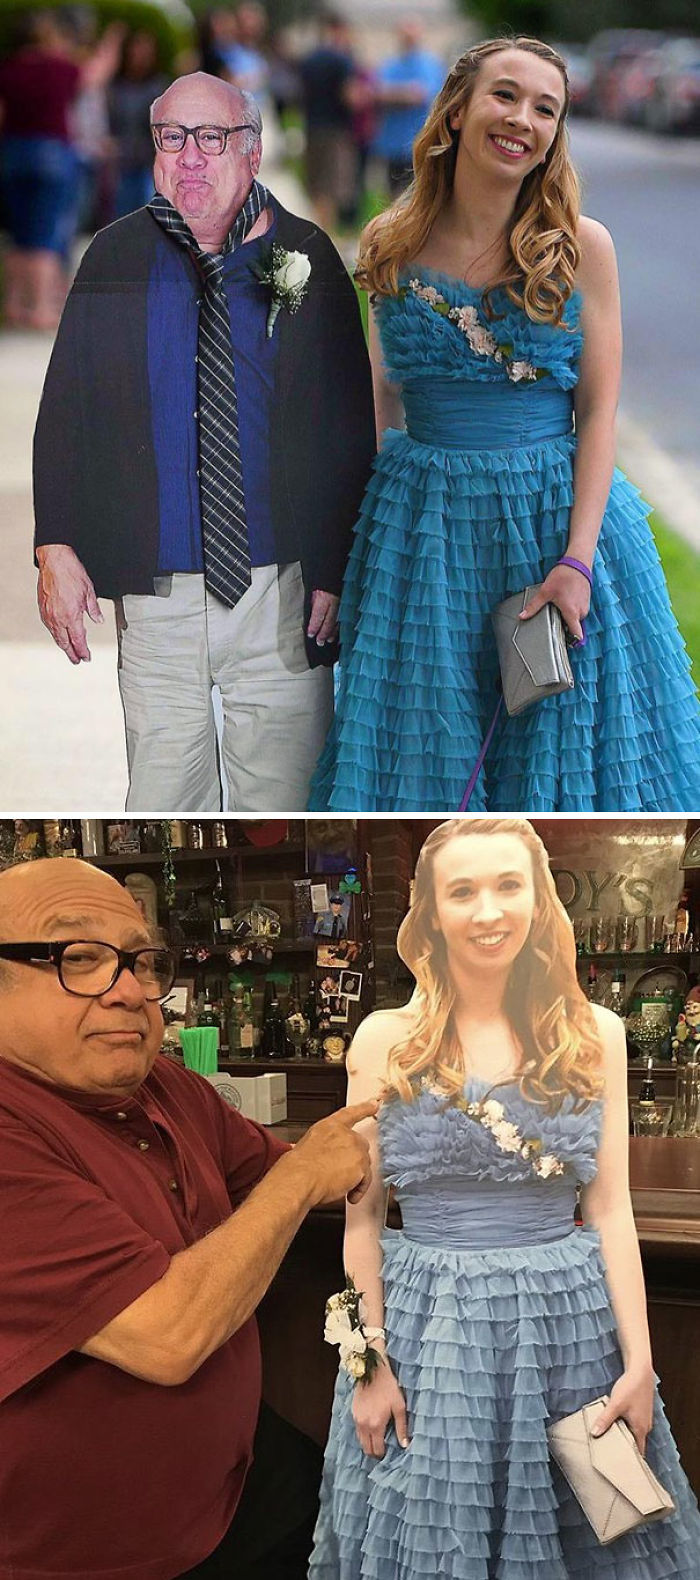 Esta chica llevó una silueta de Danny DeVito a su graduación, y Danny DeVito llevó una silueta de ella al pub